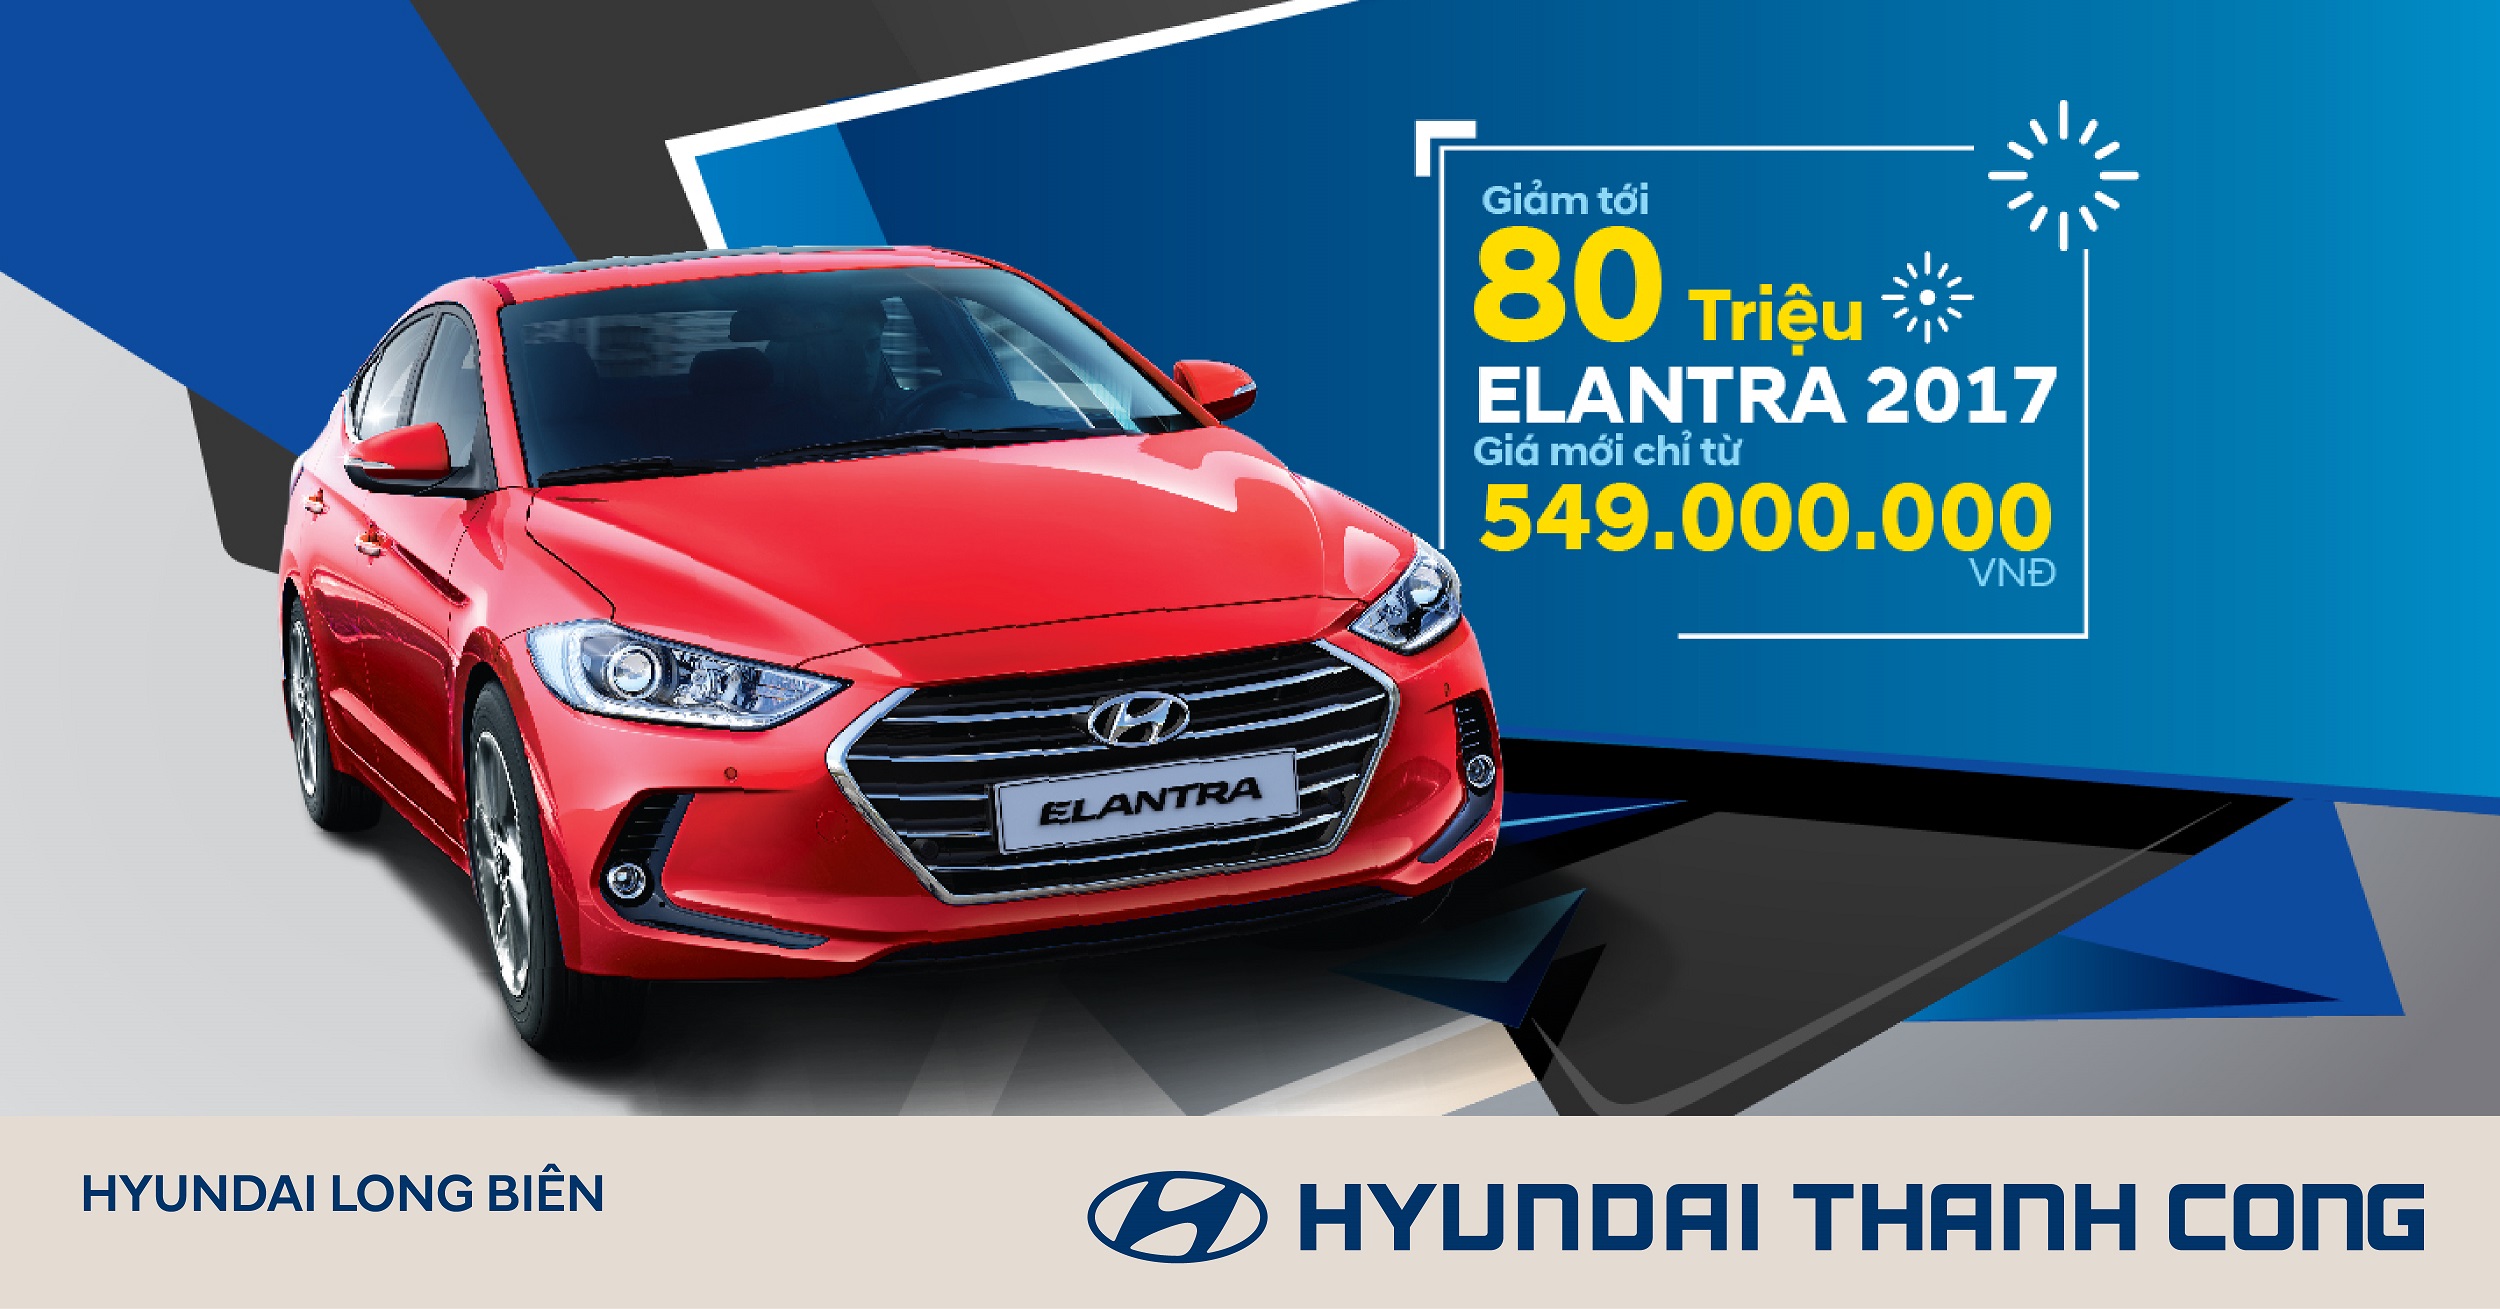 Hyundai Elantra khuyến mại đặc biệt giảm tới 80 triệu đồng, giá mới từ 549 triệu đồng